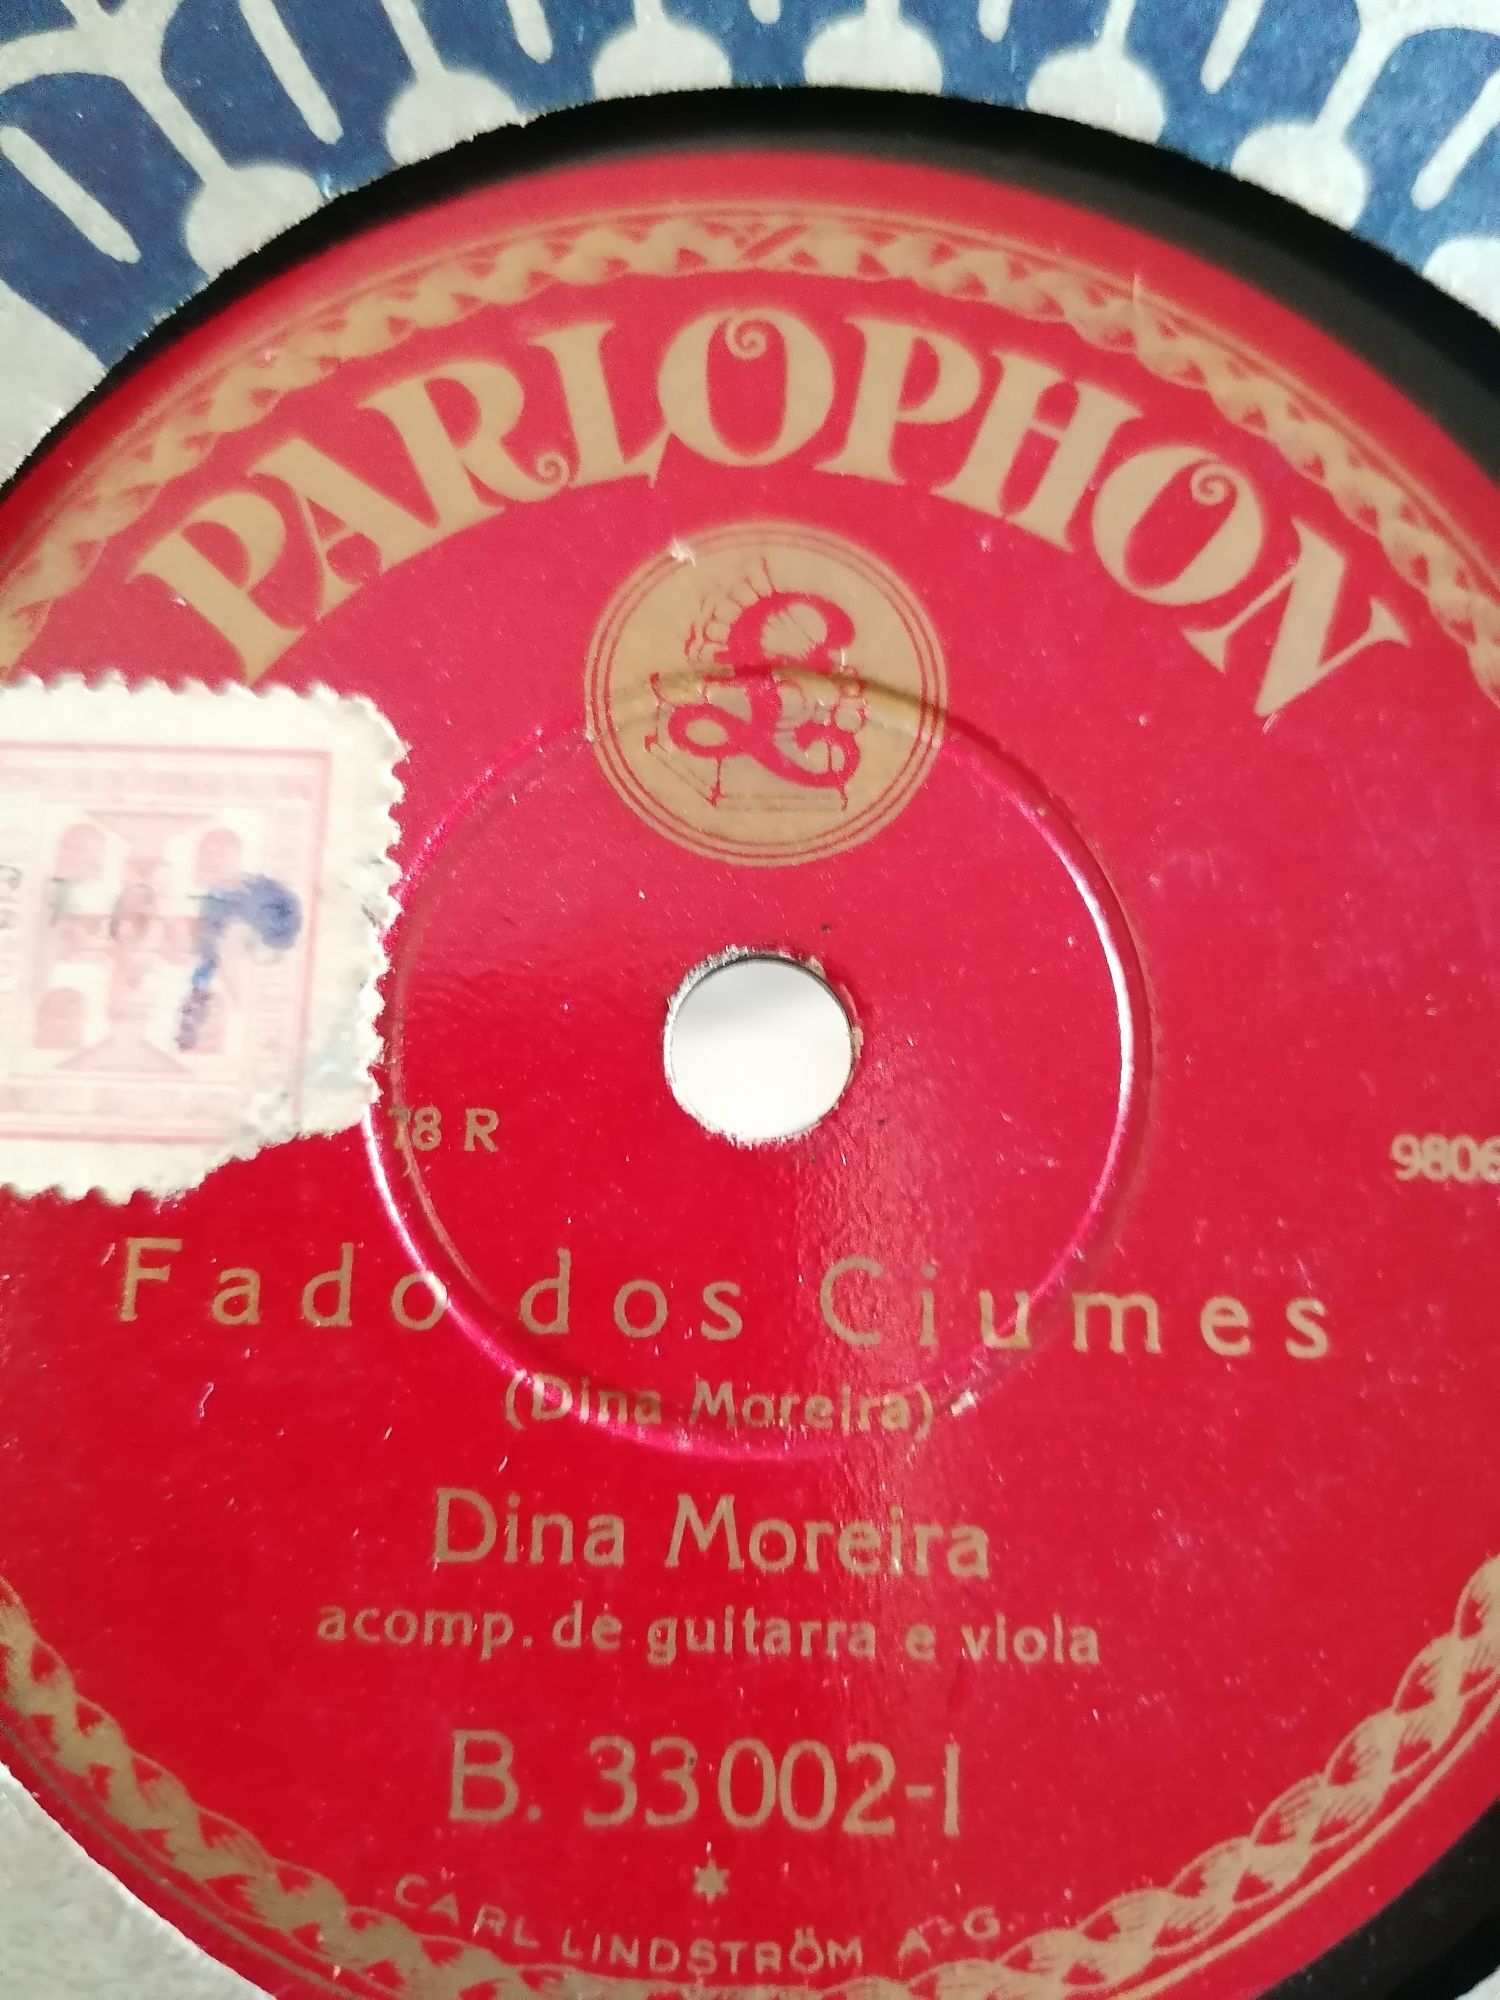 Discos 78 rpm Vintage